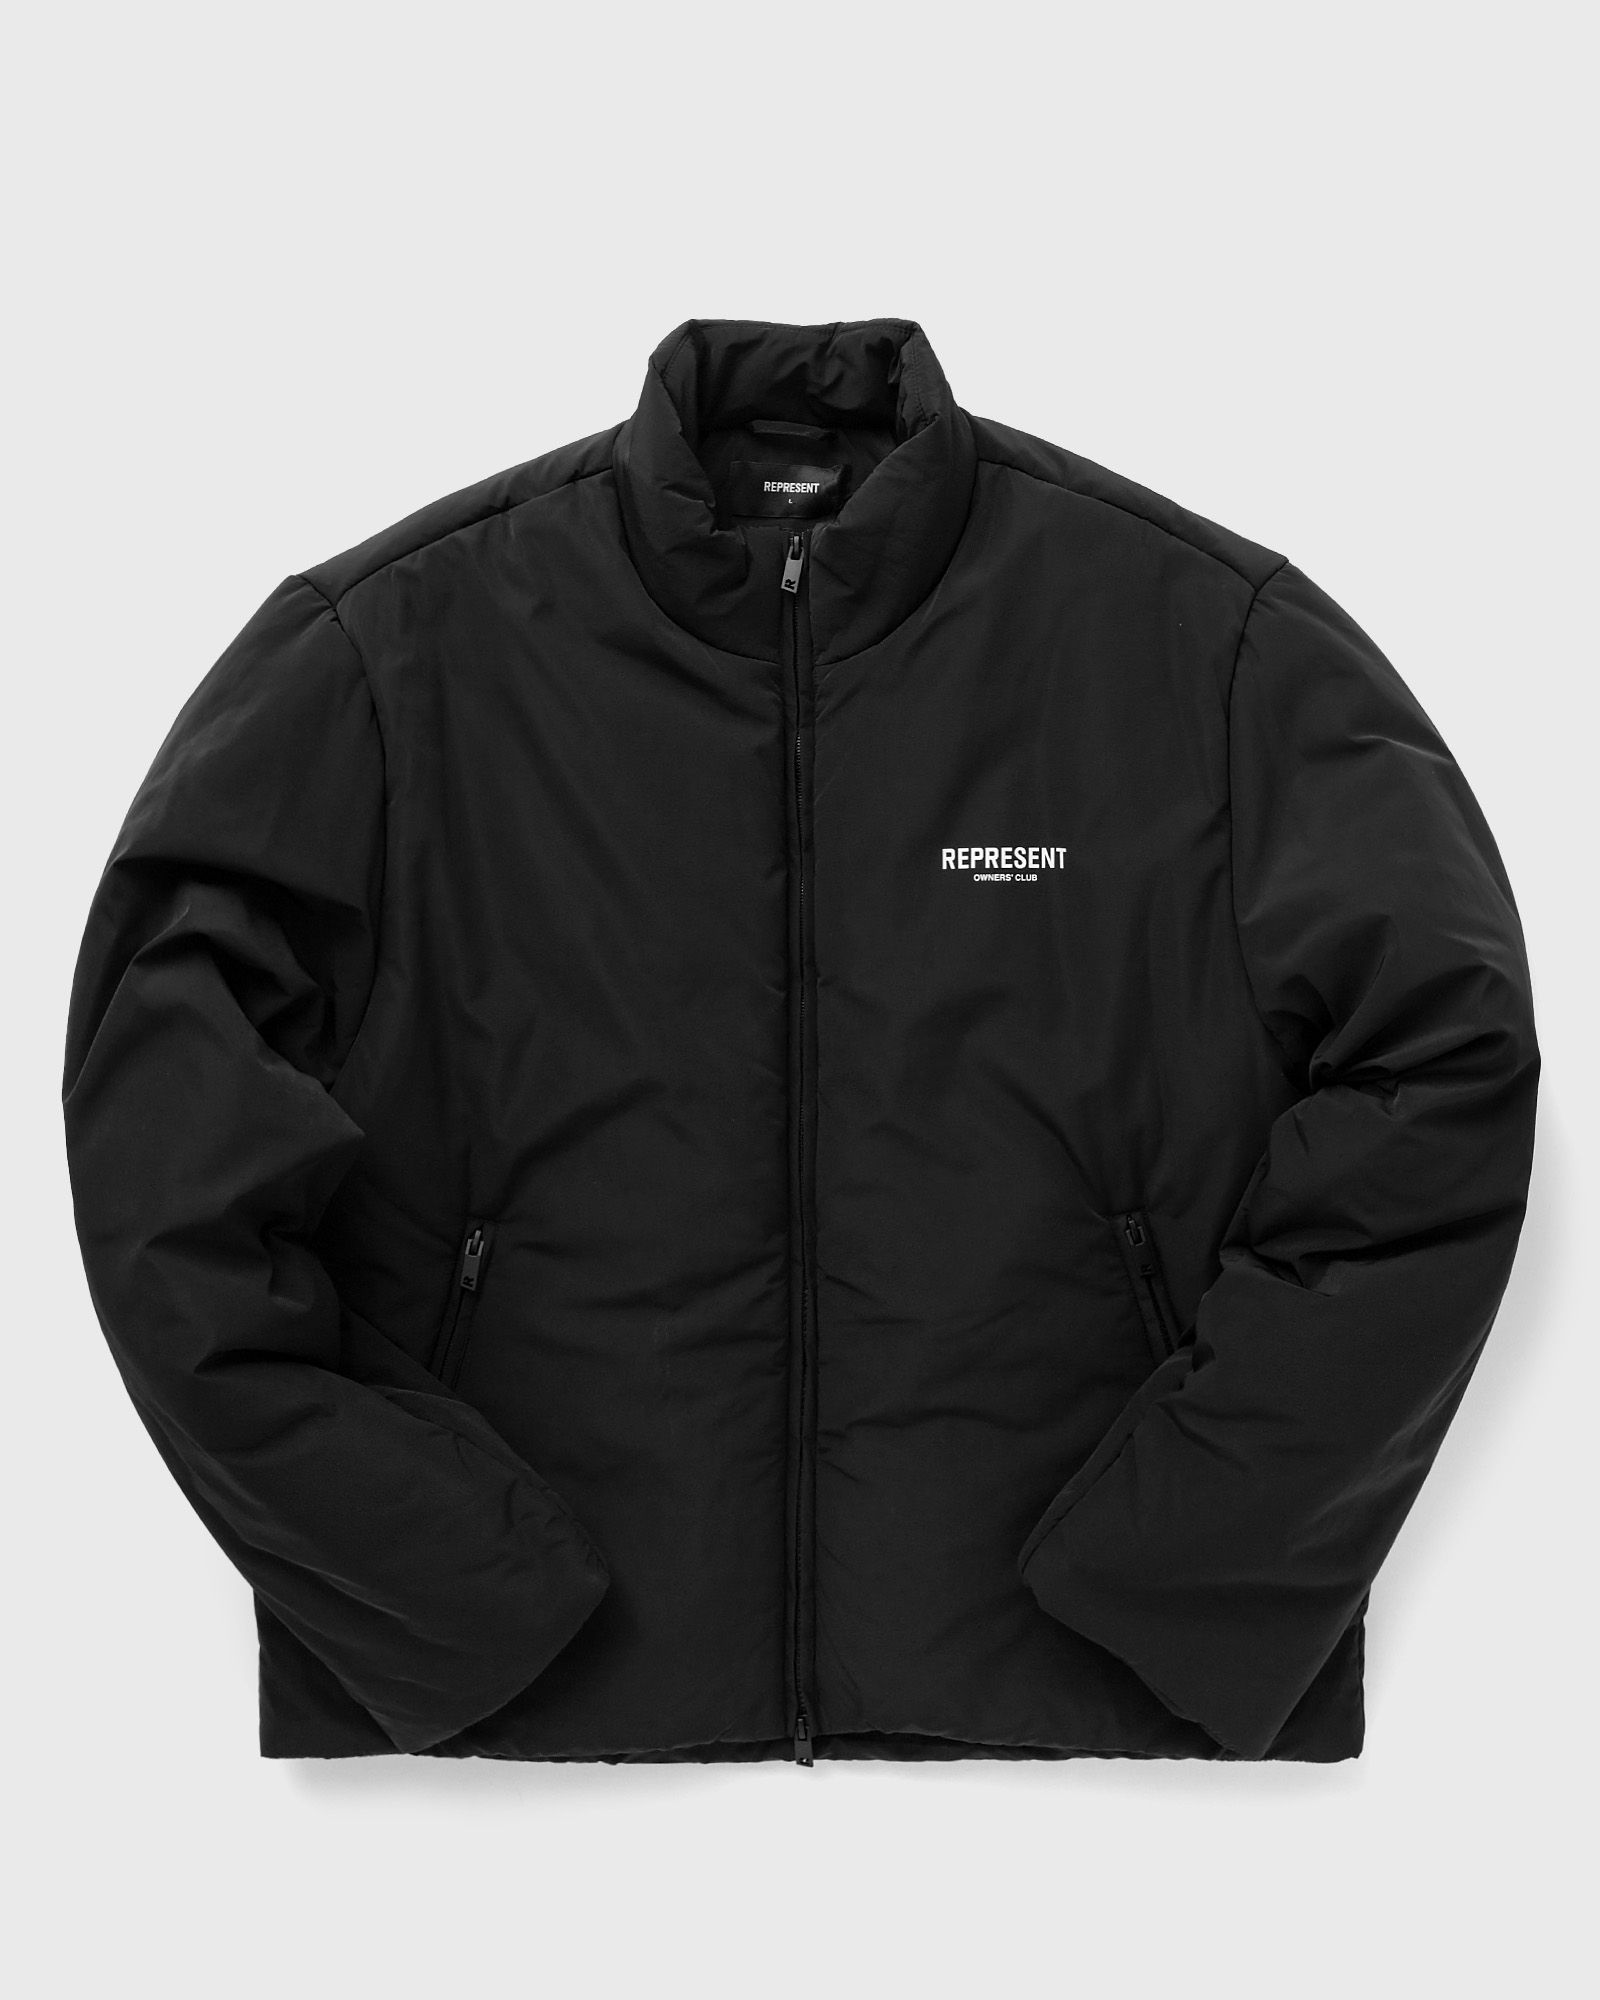 Represent - owners club wadded jacket men down & puffer jackets|windbreaker black in größe:xxl